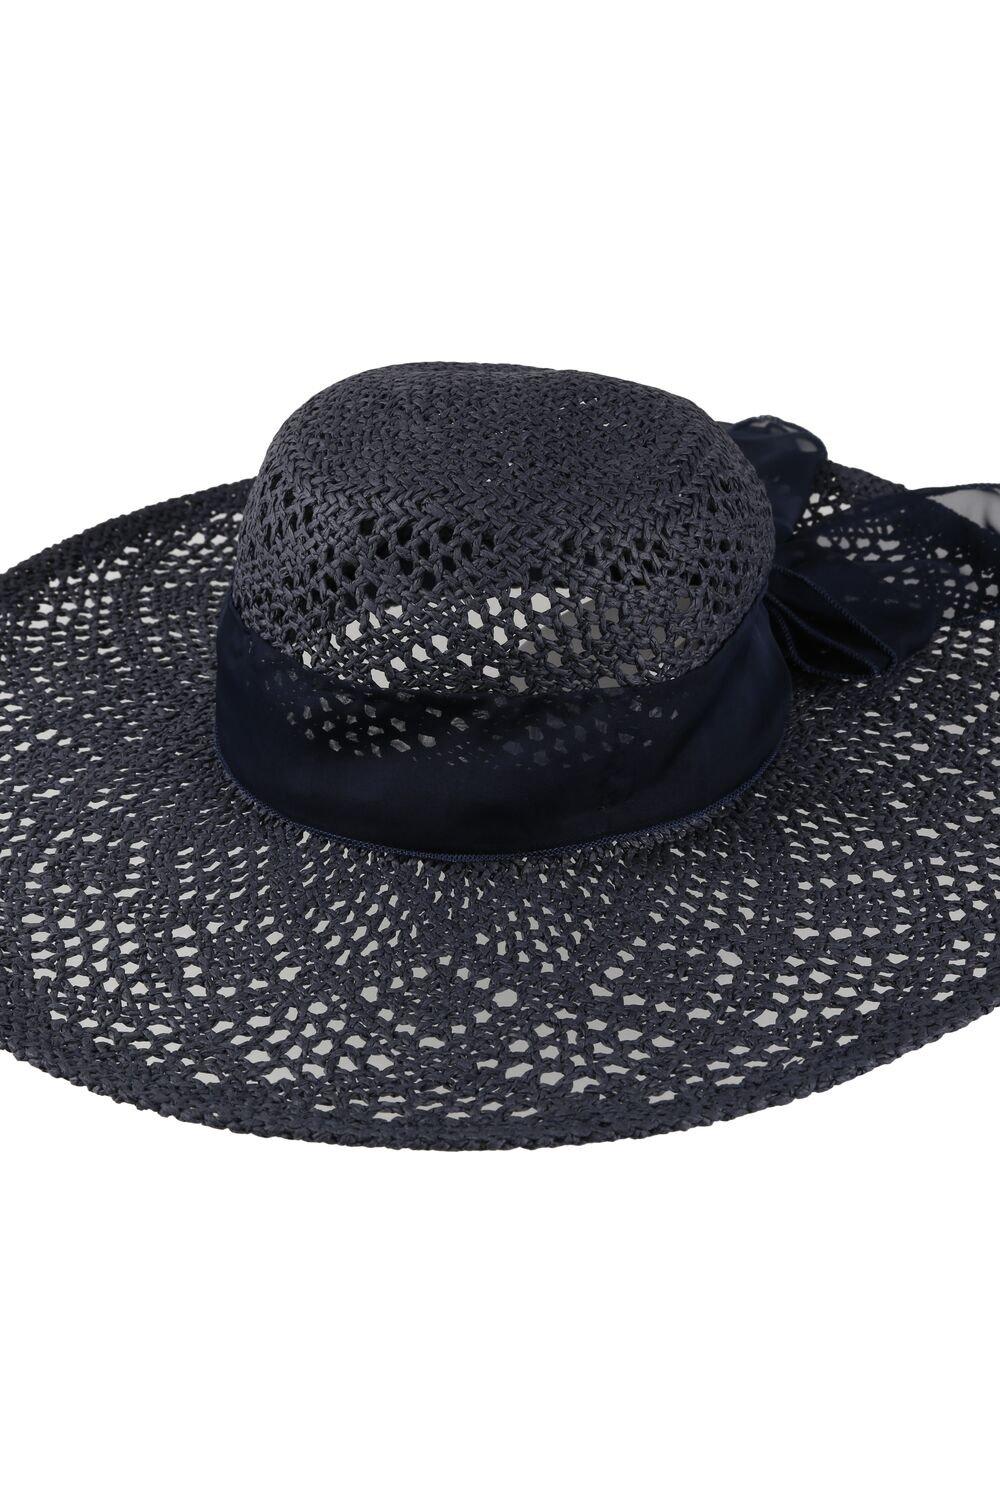 'Taura III' Соломенная бумажная шляпа от солнца Regatta, синий детская шляпа рыбака с логотипом на заказ хлопковая шляпа женская летняя солнцезащитная панама двусторонняя солнцезащитная шляпа для от